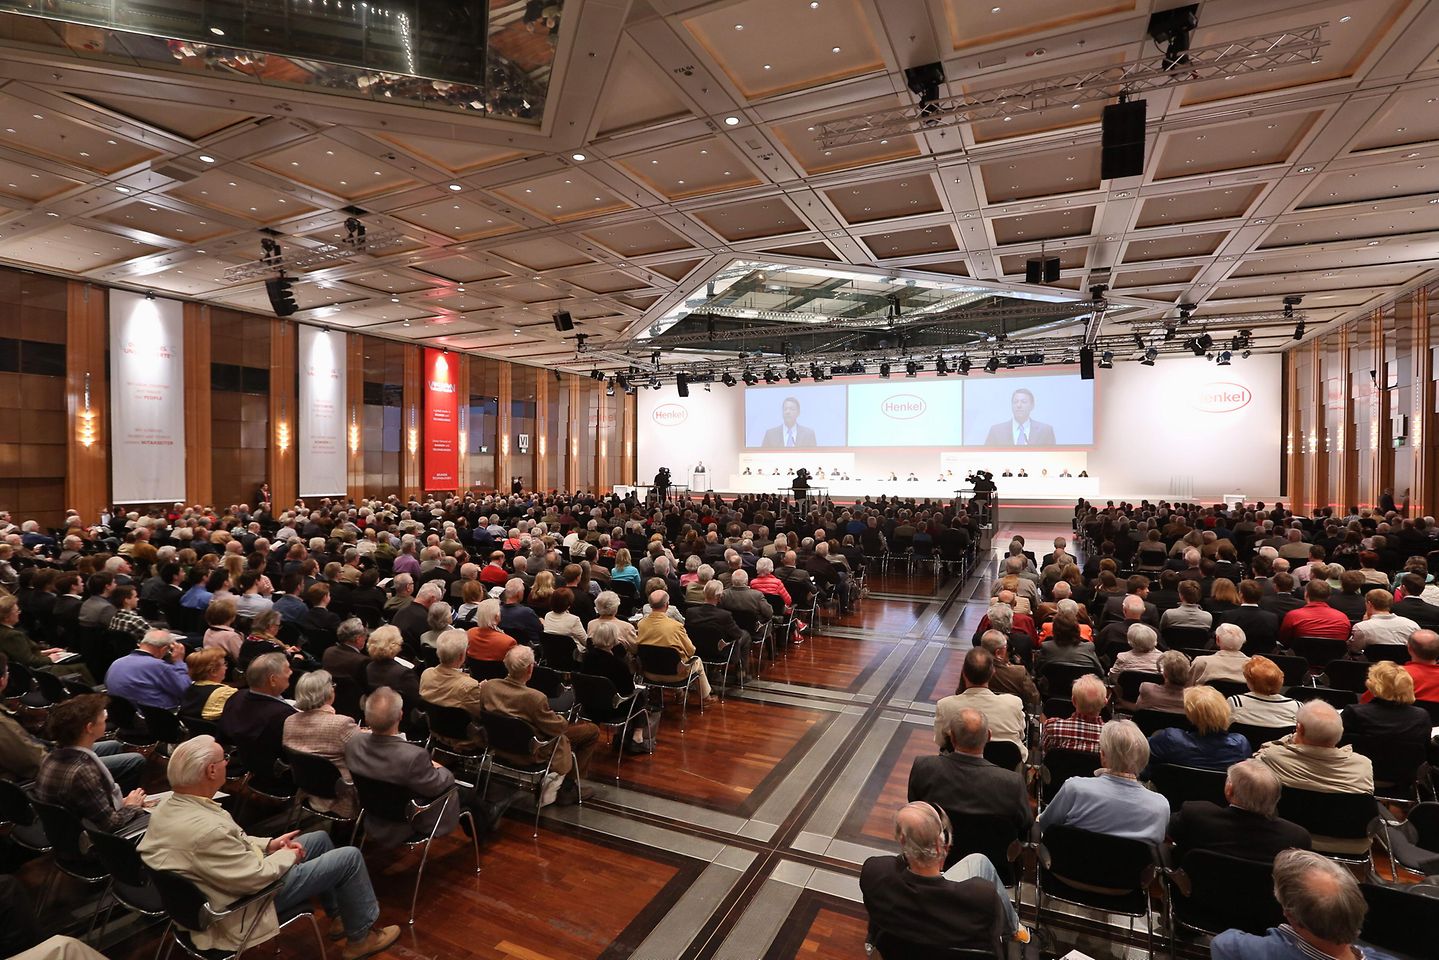 Henkel Annual General Meeting in Duesseldorf / Germany